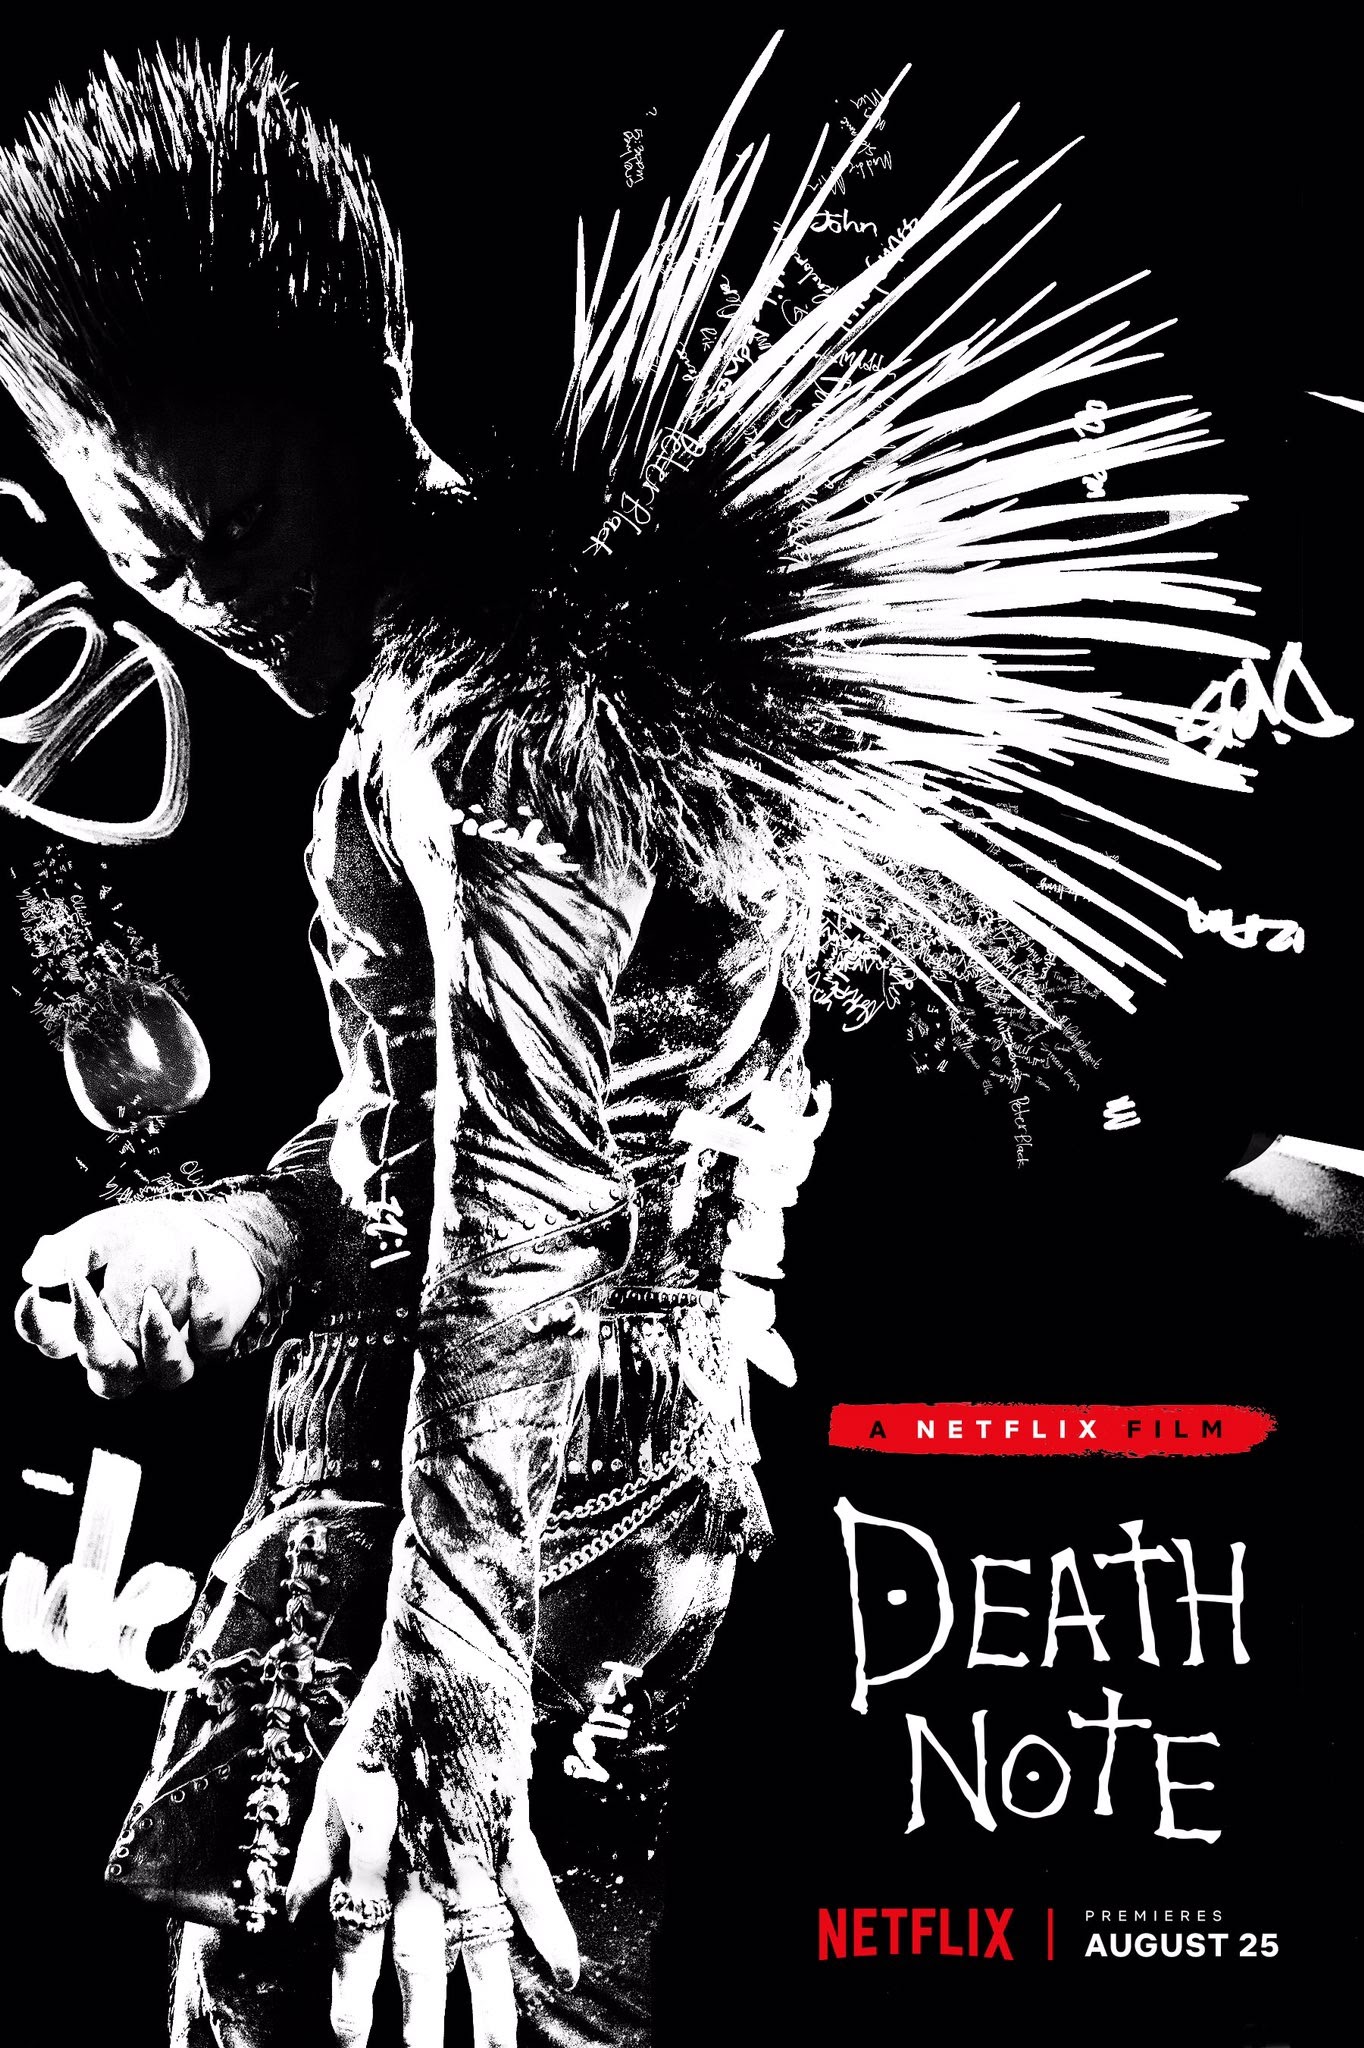 Death Note ハリウッド版実写映画 デスノート が 死神のノートをめぐるキラとlの攻防をかいま見せた全長版の新しい予告編をリリース Cia Movie News